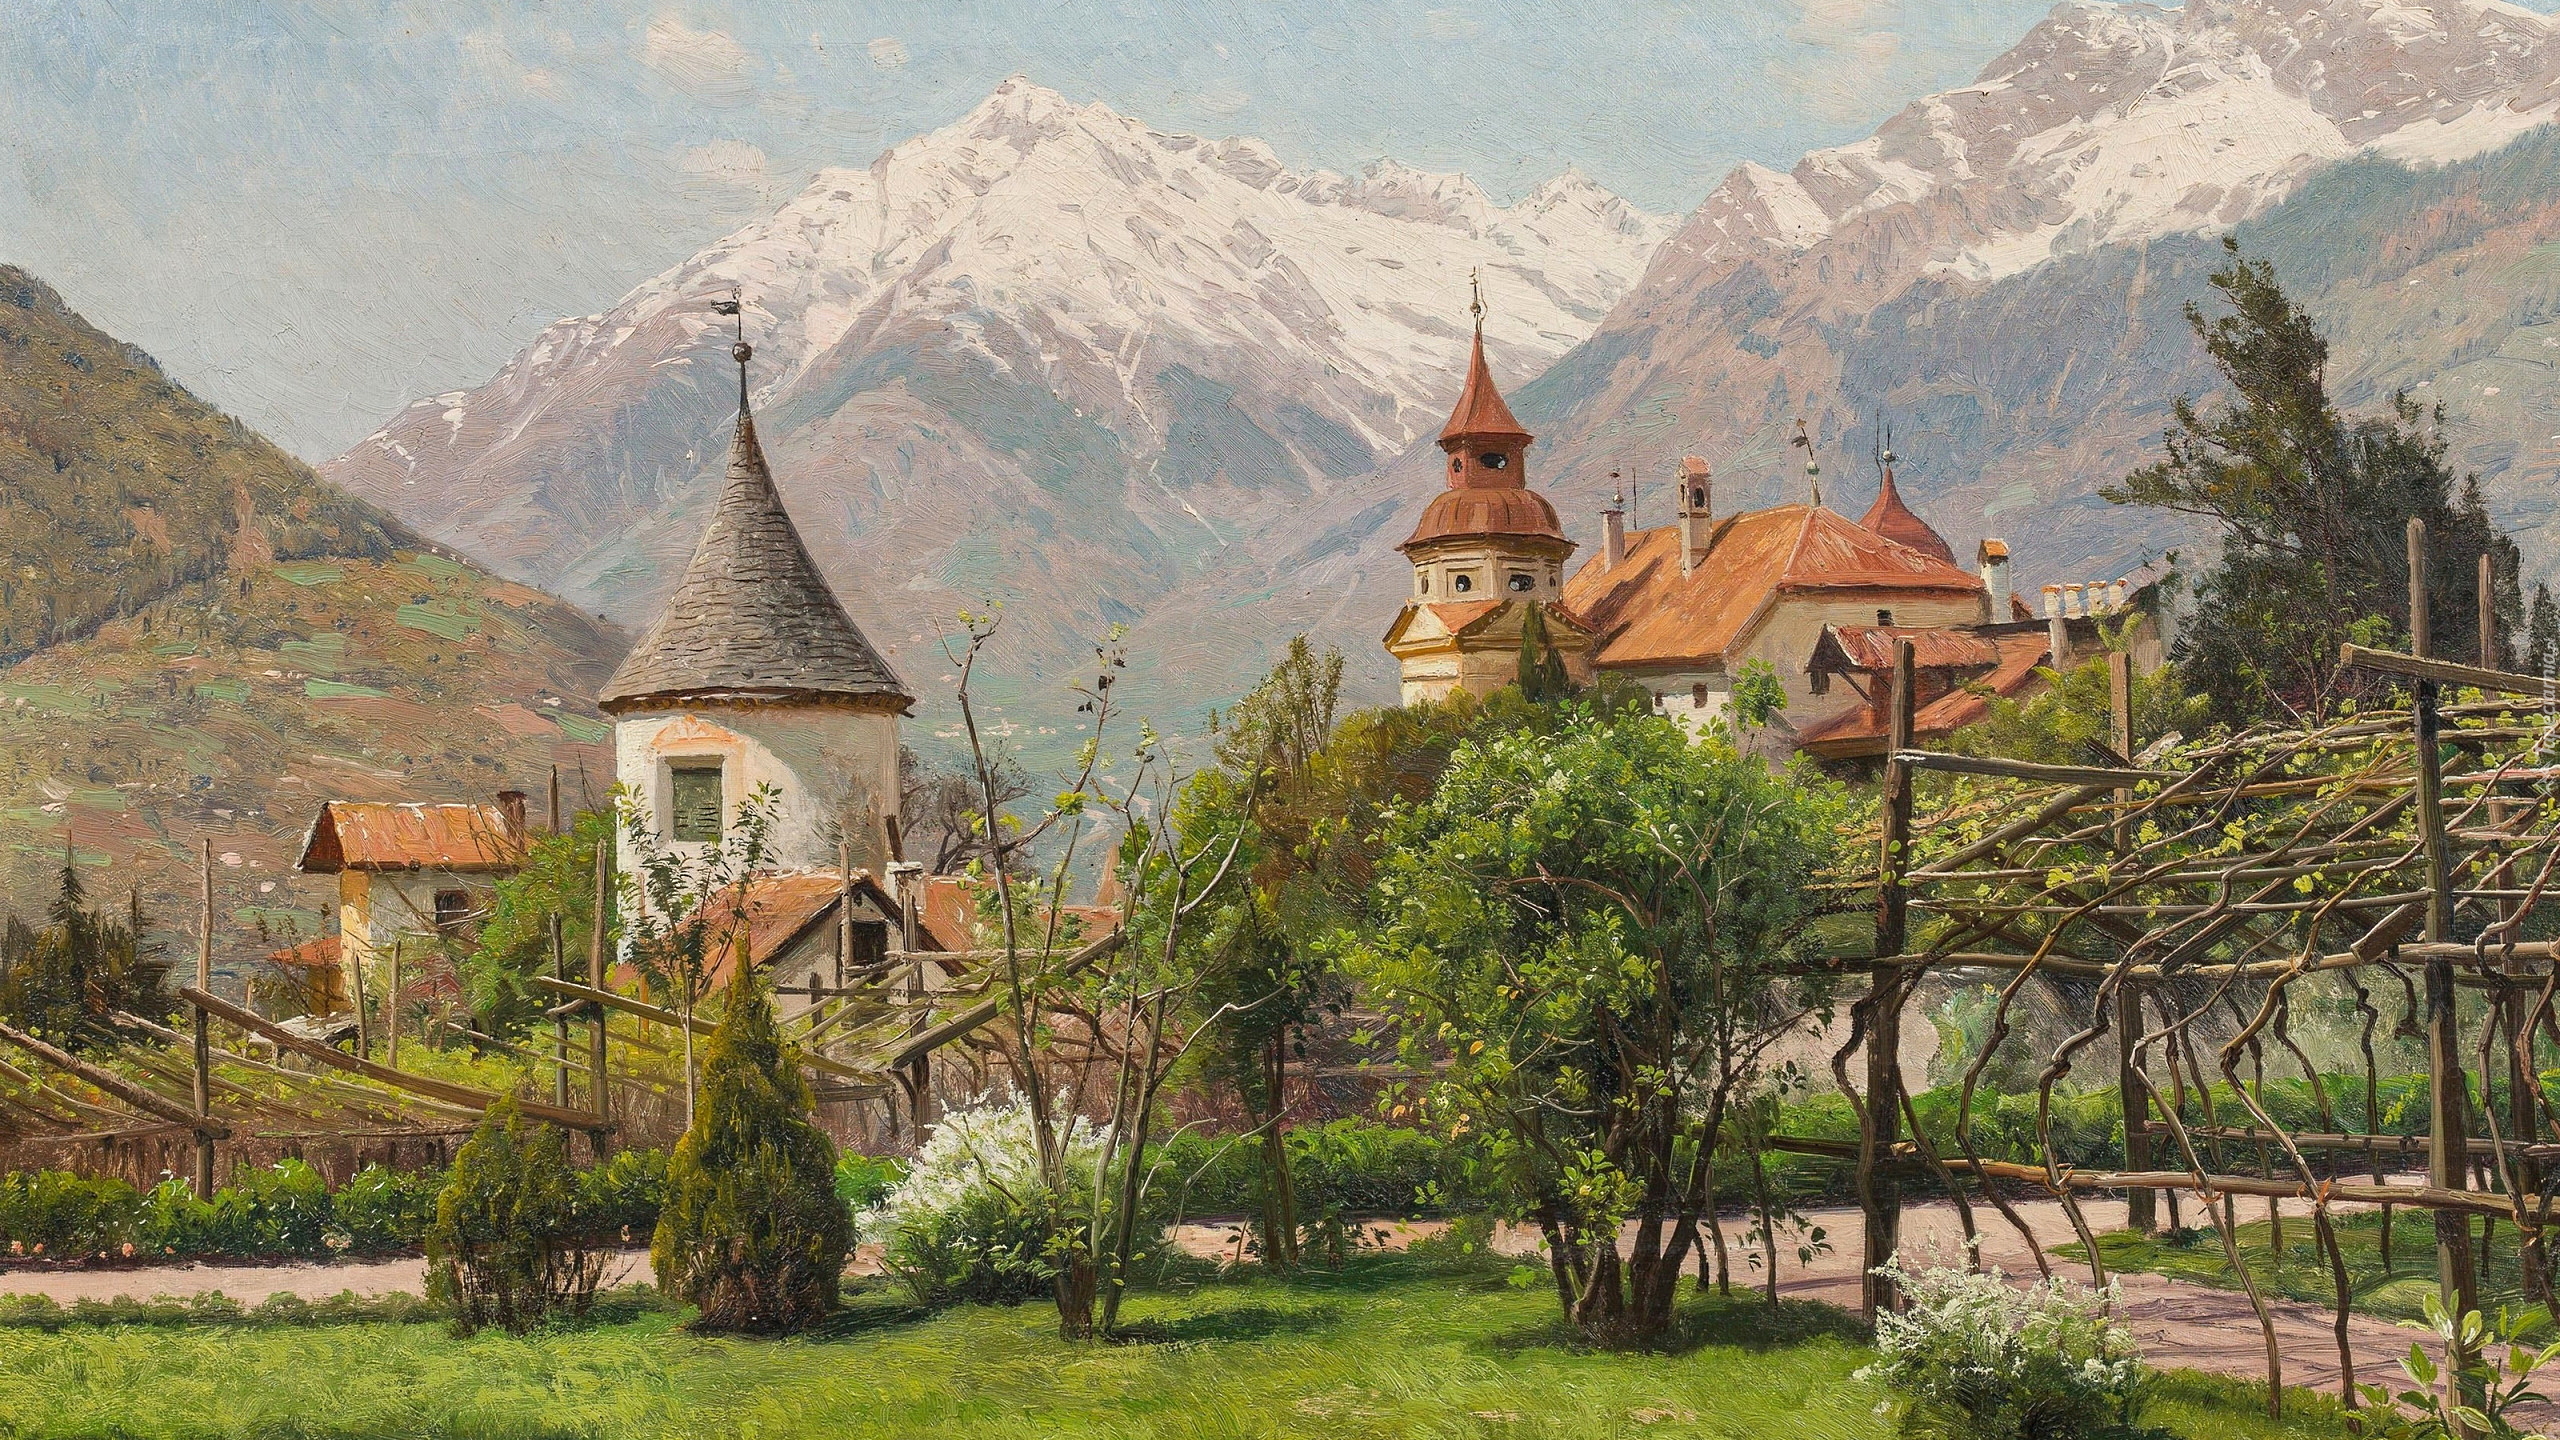 Malarstwo, Obraz, Peder Mork Monsted, Zamek Winkel, Domy, Drzewa, Góry, Południowy Tyrol, Włochy